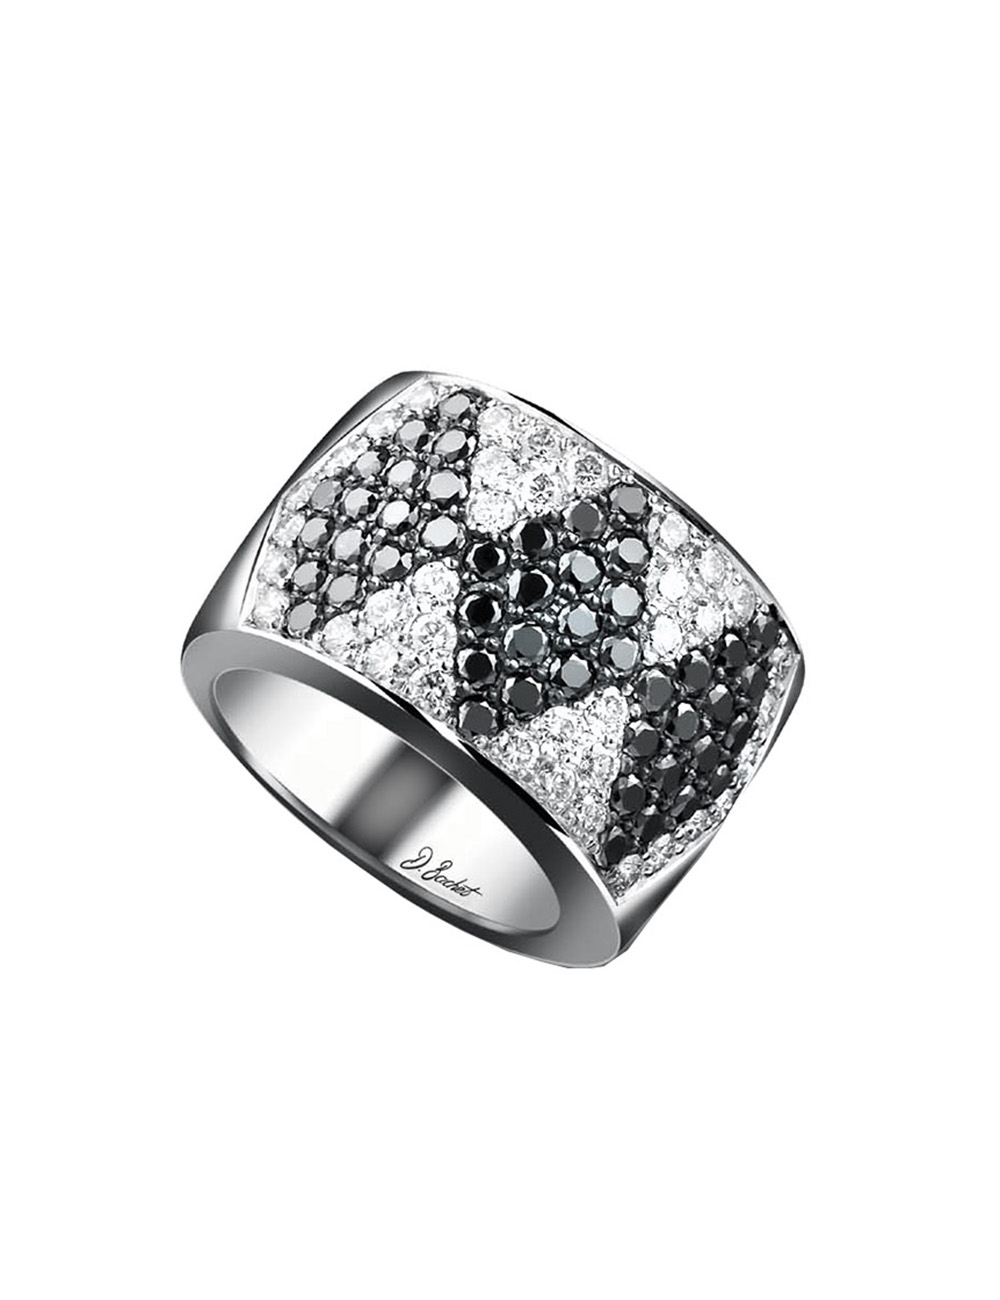 Bague luxe pour femme à l'anneau épais en platine, diamants blancs et diamants noirs